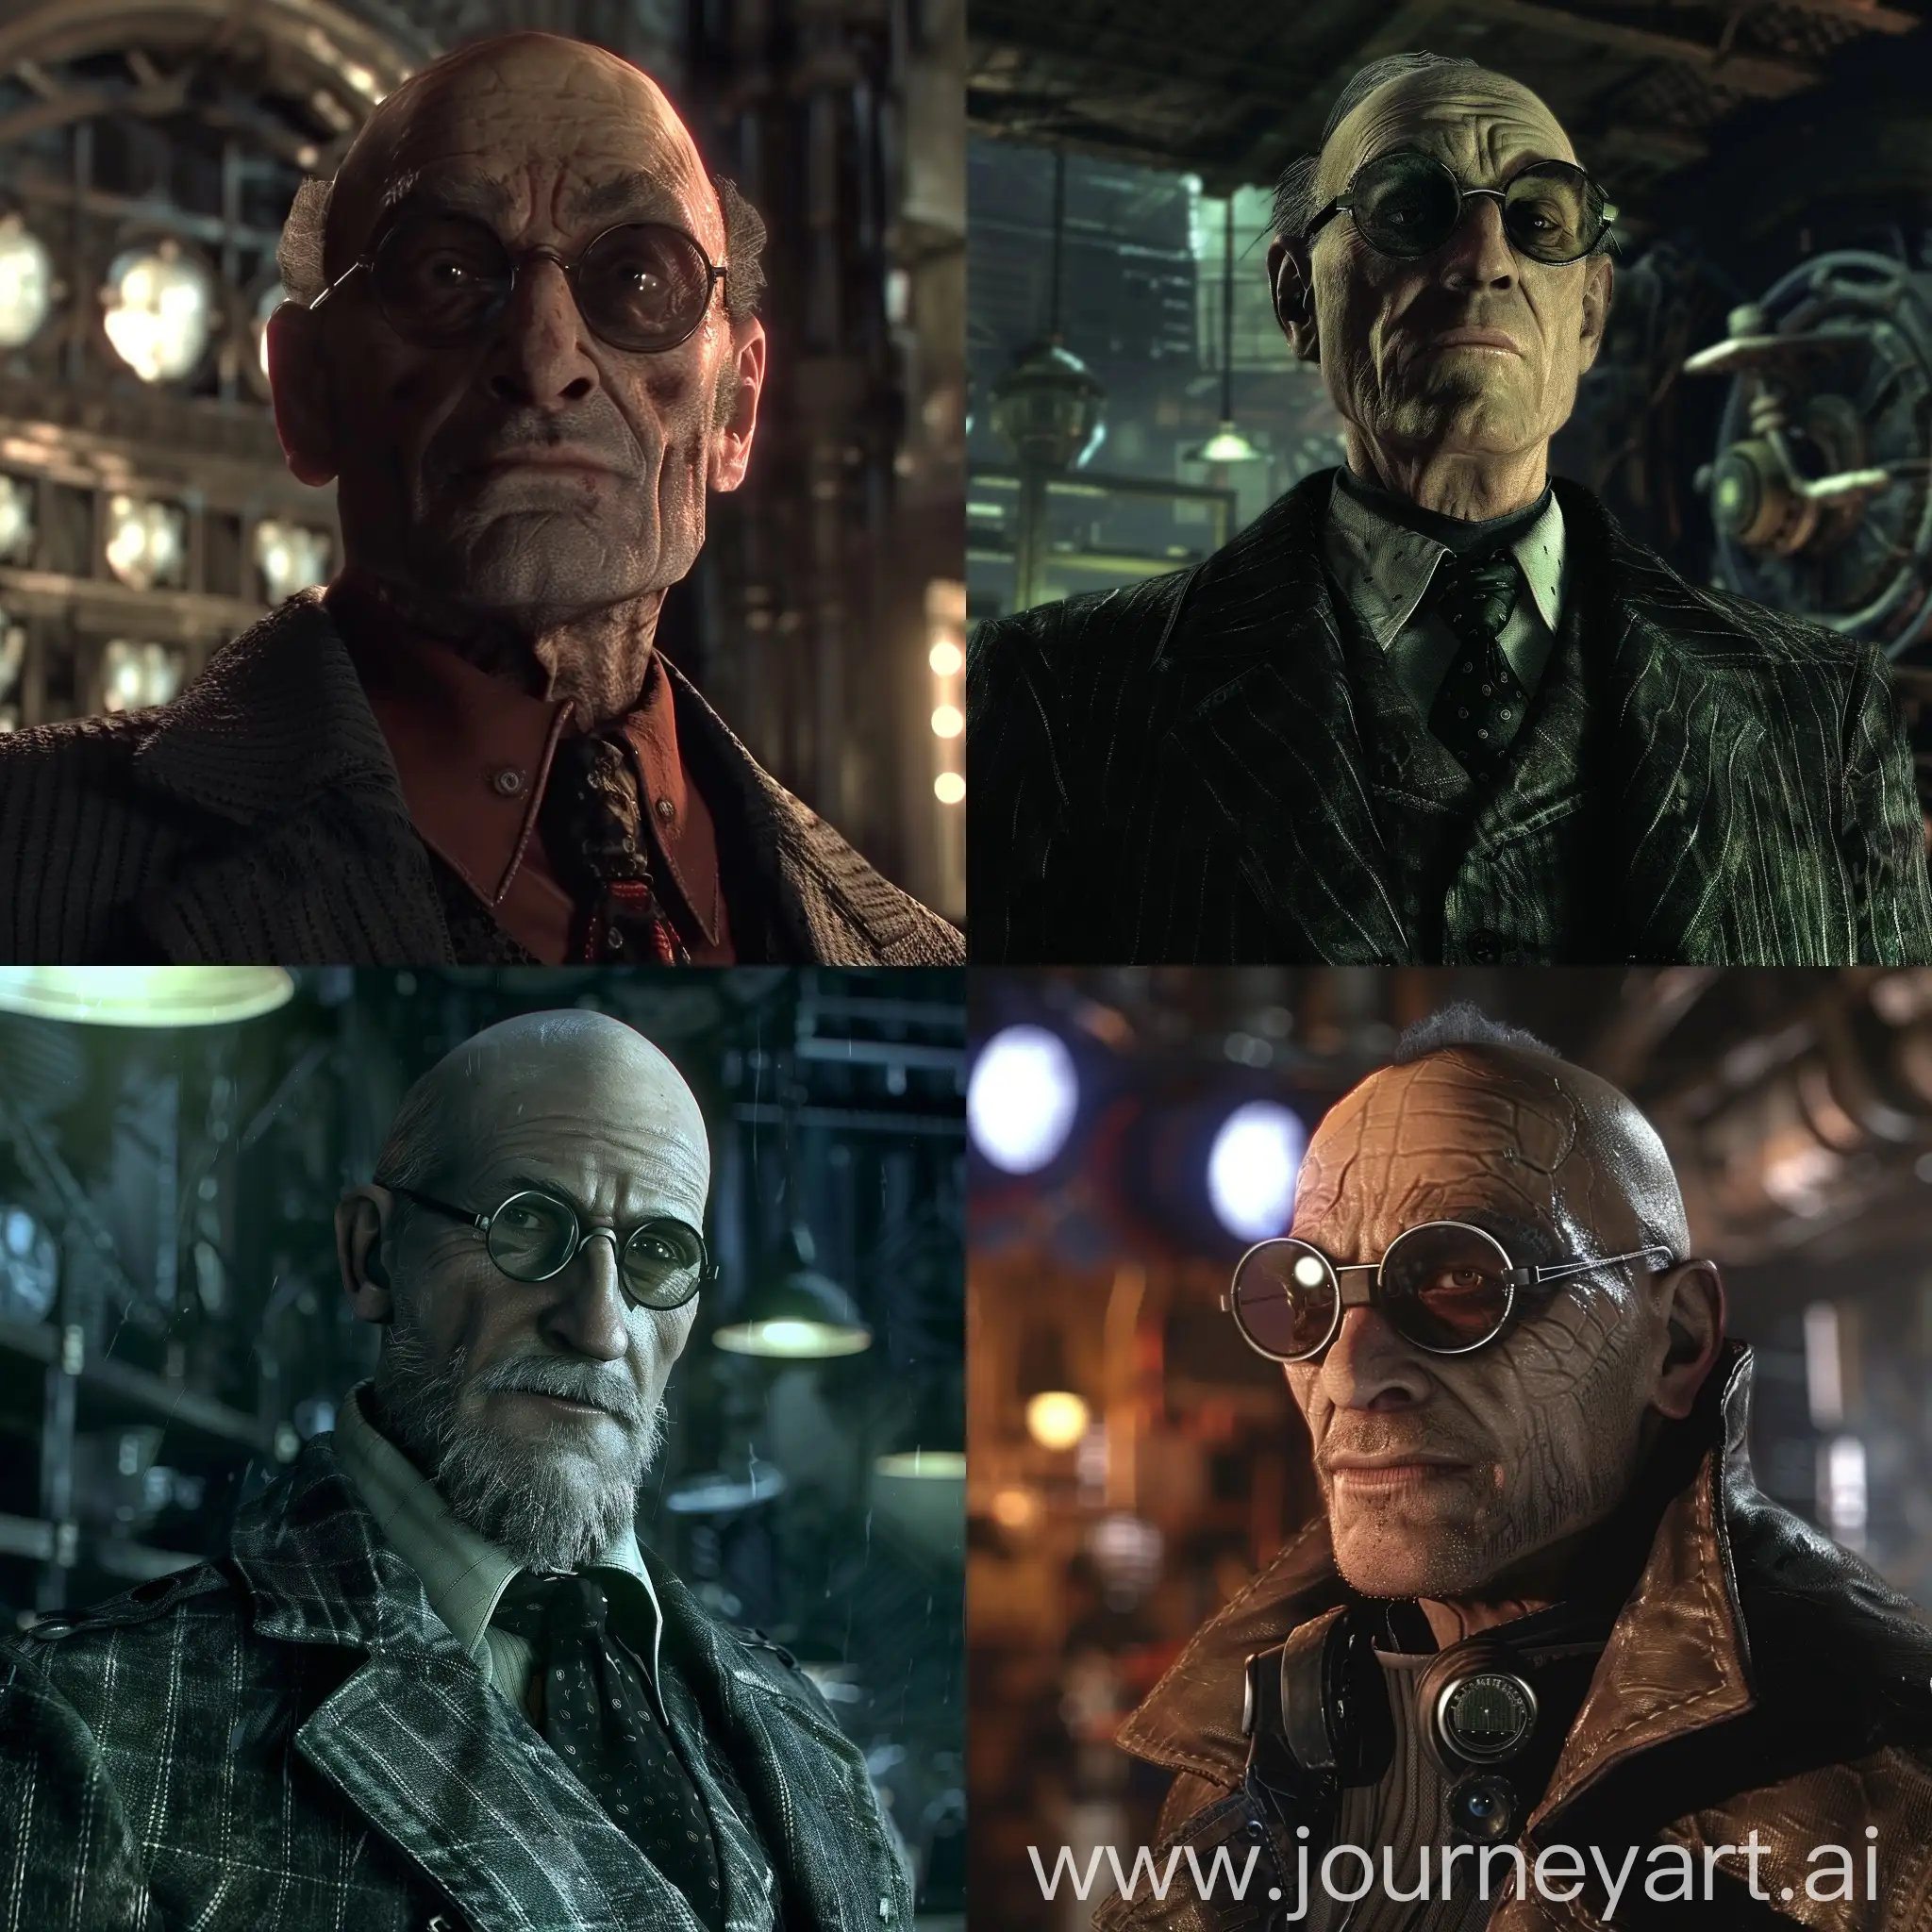 Rainer-Winkler-Portrays-Hugo-Strange-in-Batman-Arkham-City-Cosplay